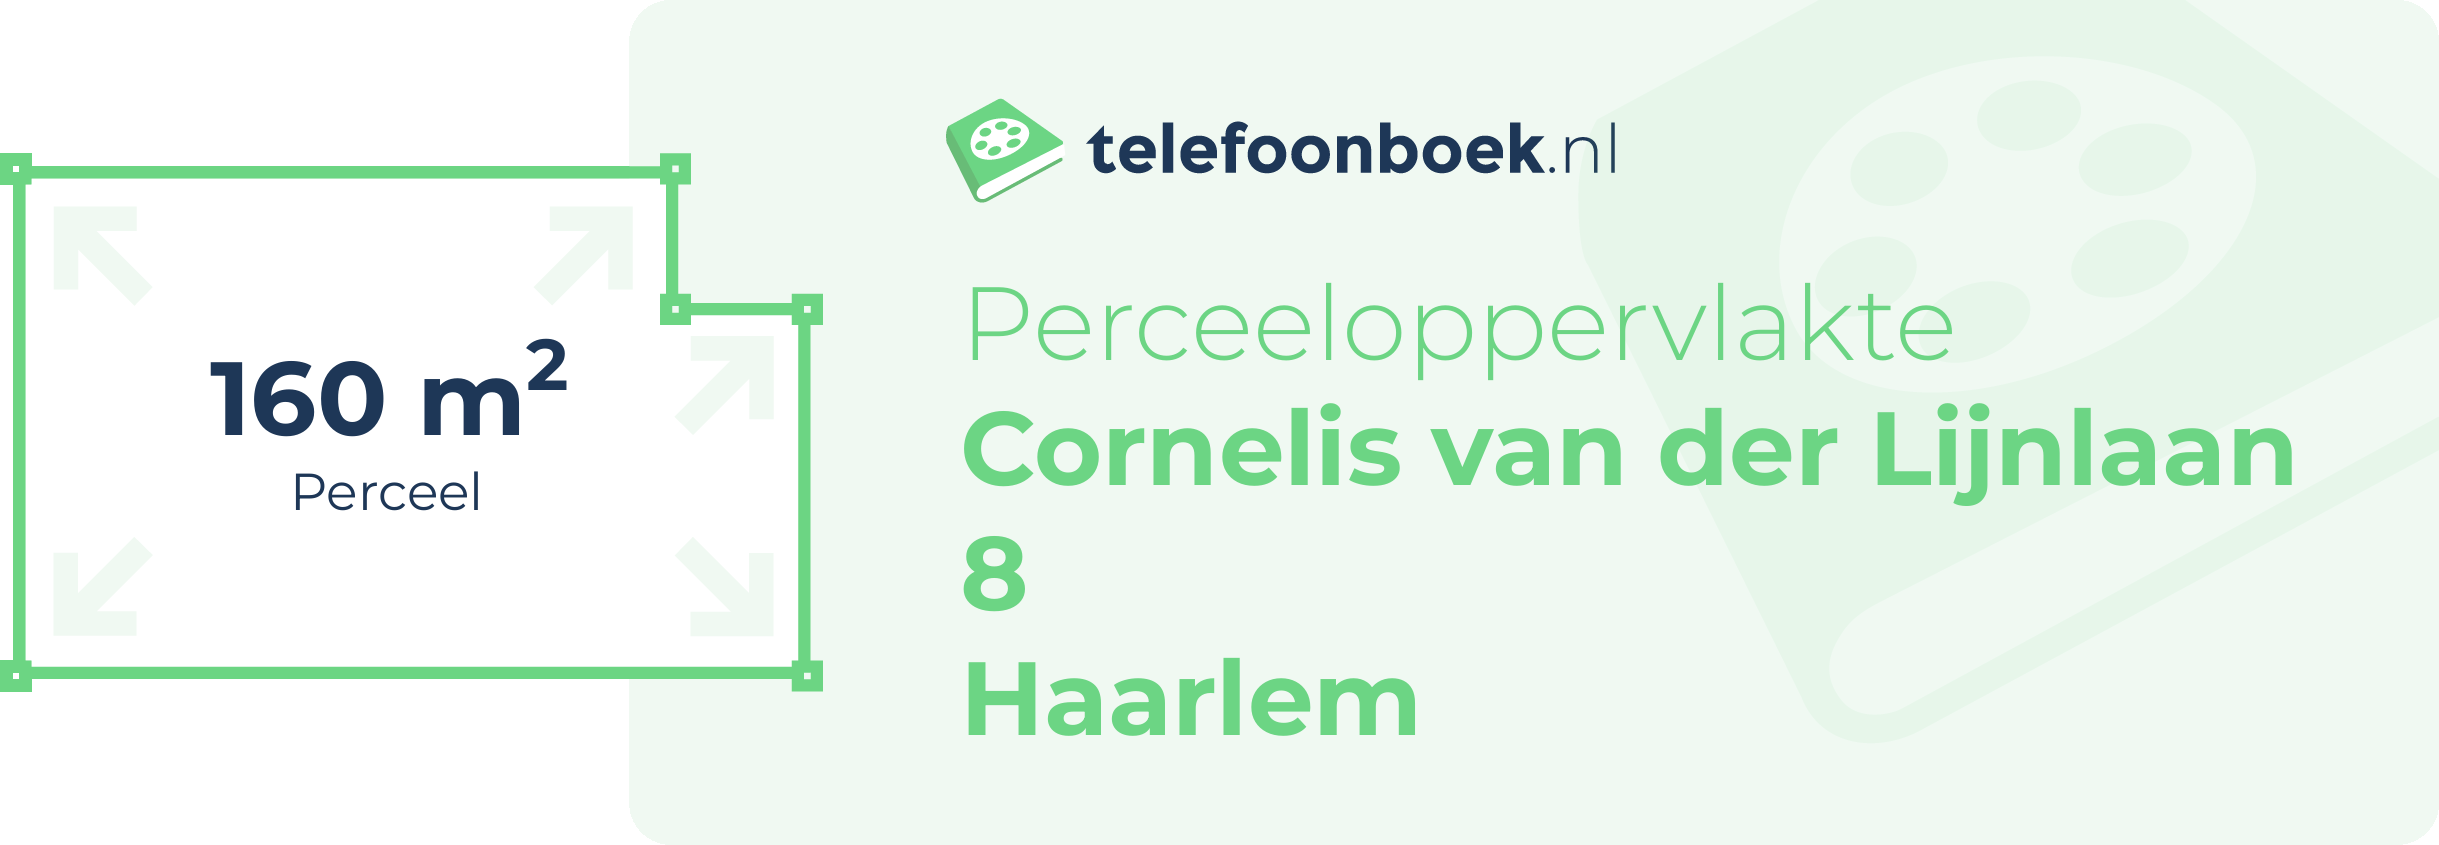 Perceeloppervlakte Cornelis Van Der Lijnlaan 8 Haarlem